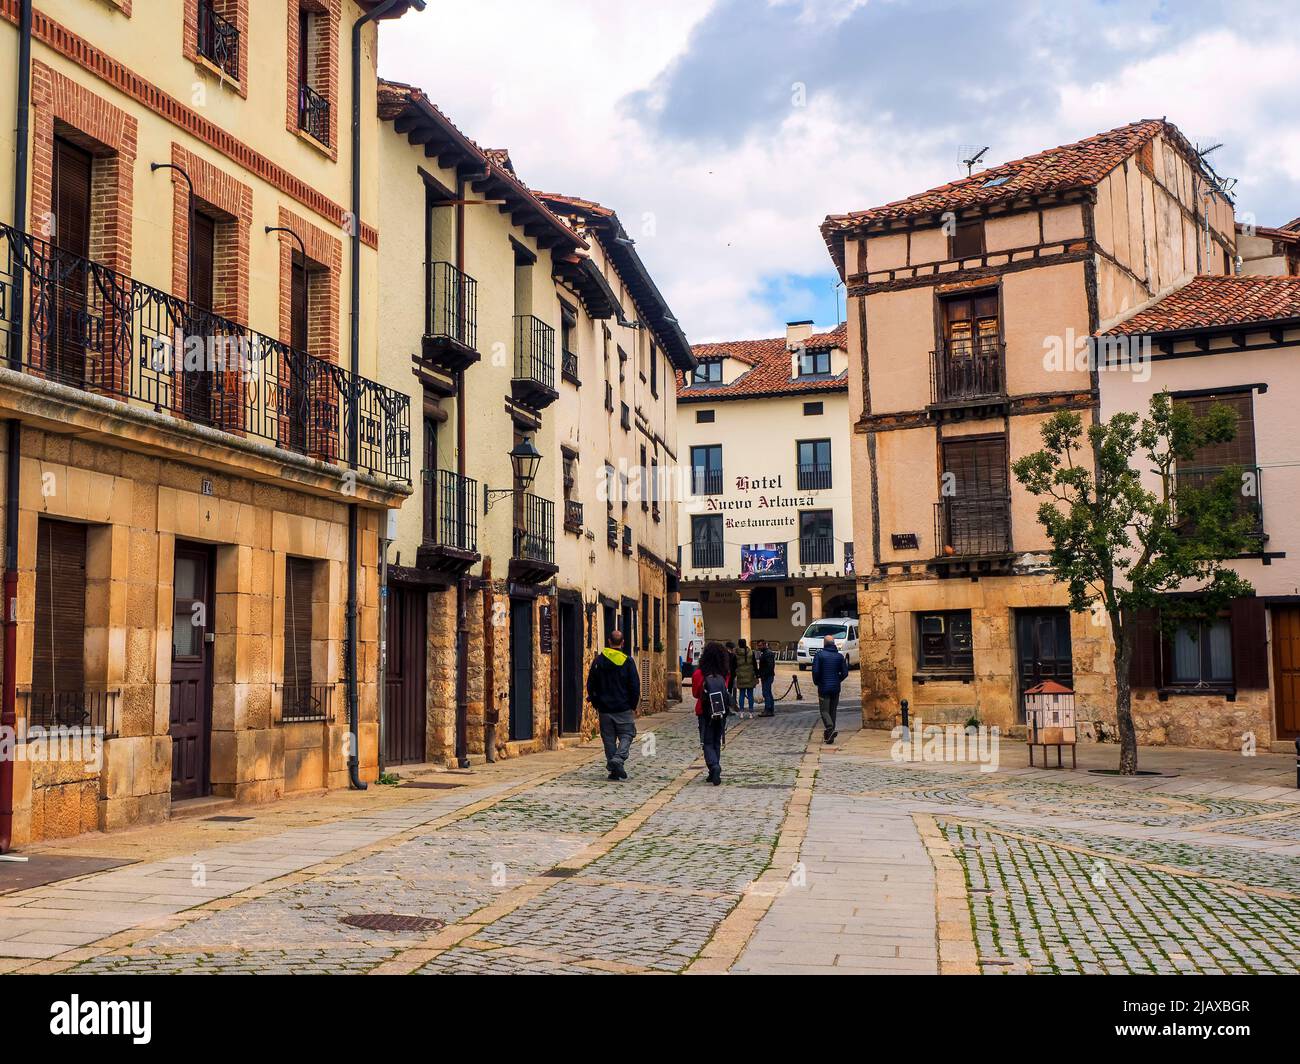 Rues d'architecture traditionnelle dans la ville de Covarrubias, Burgos, Espagne. Banque D'Images